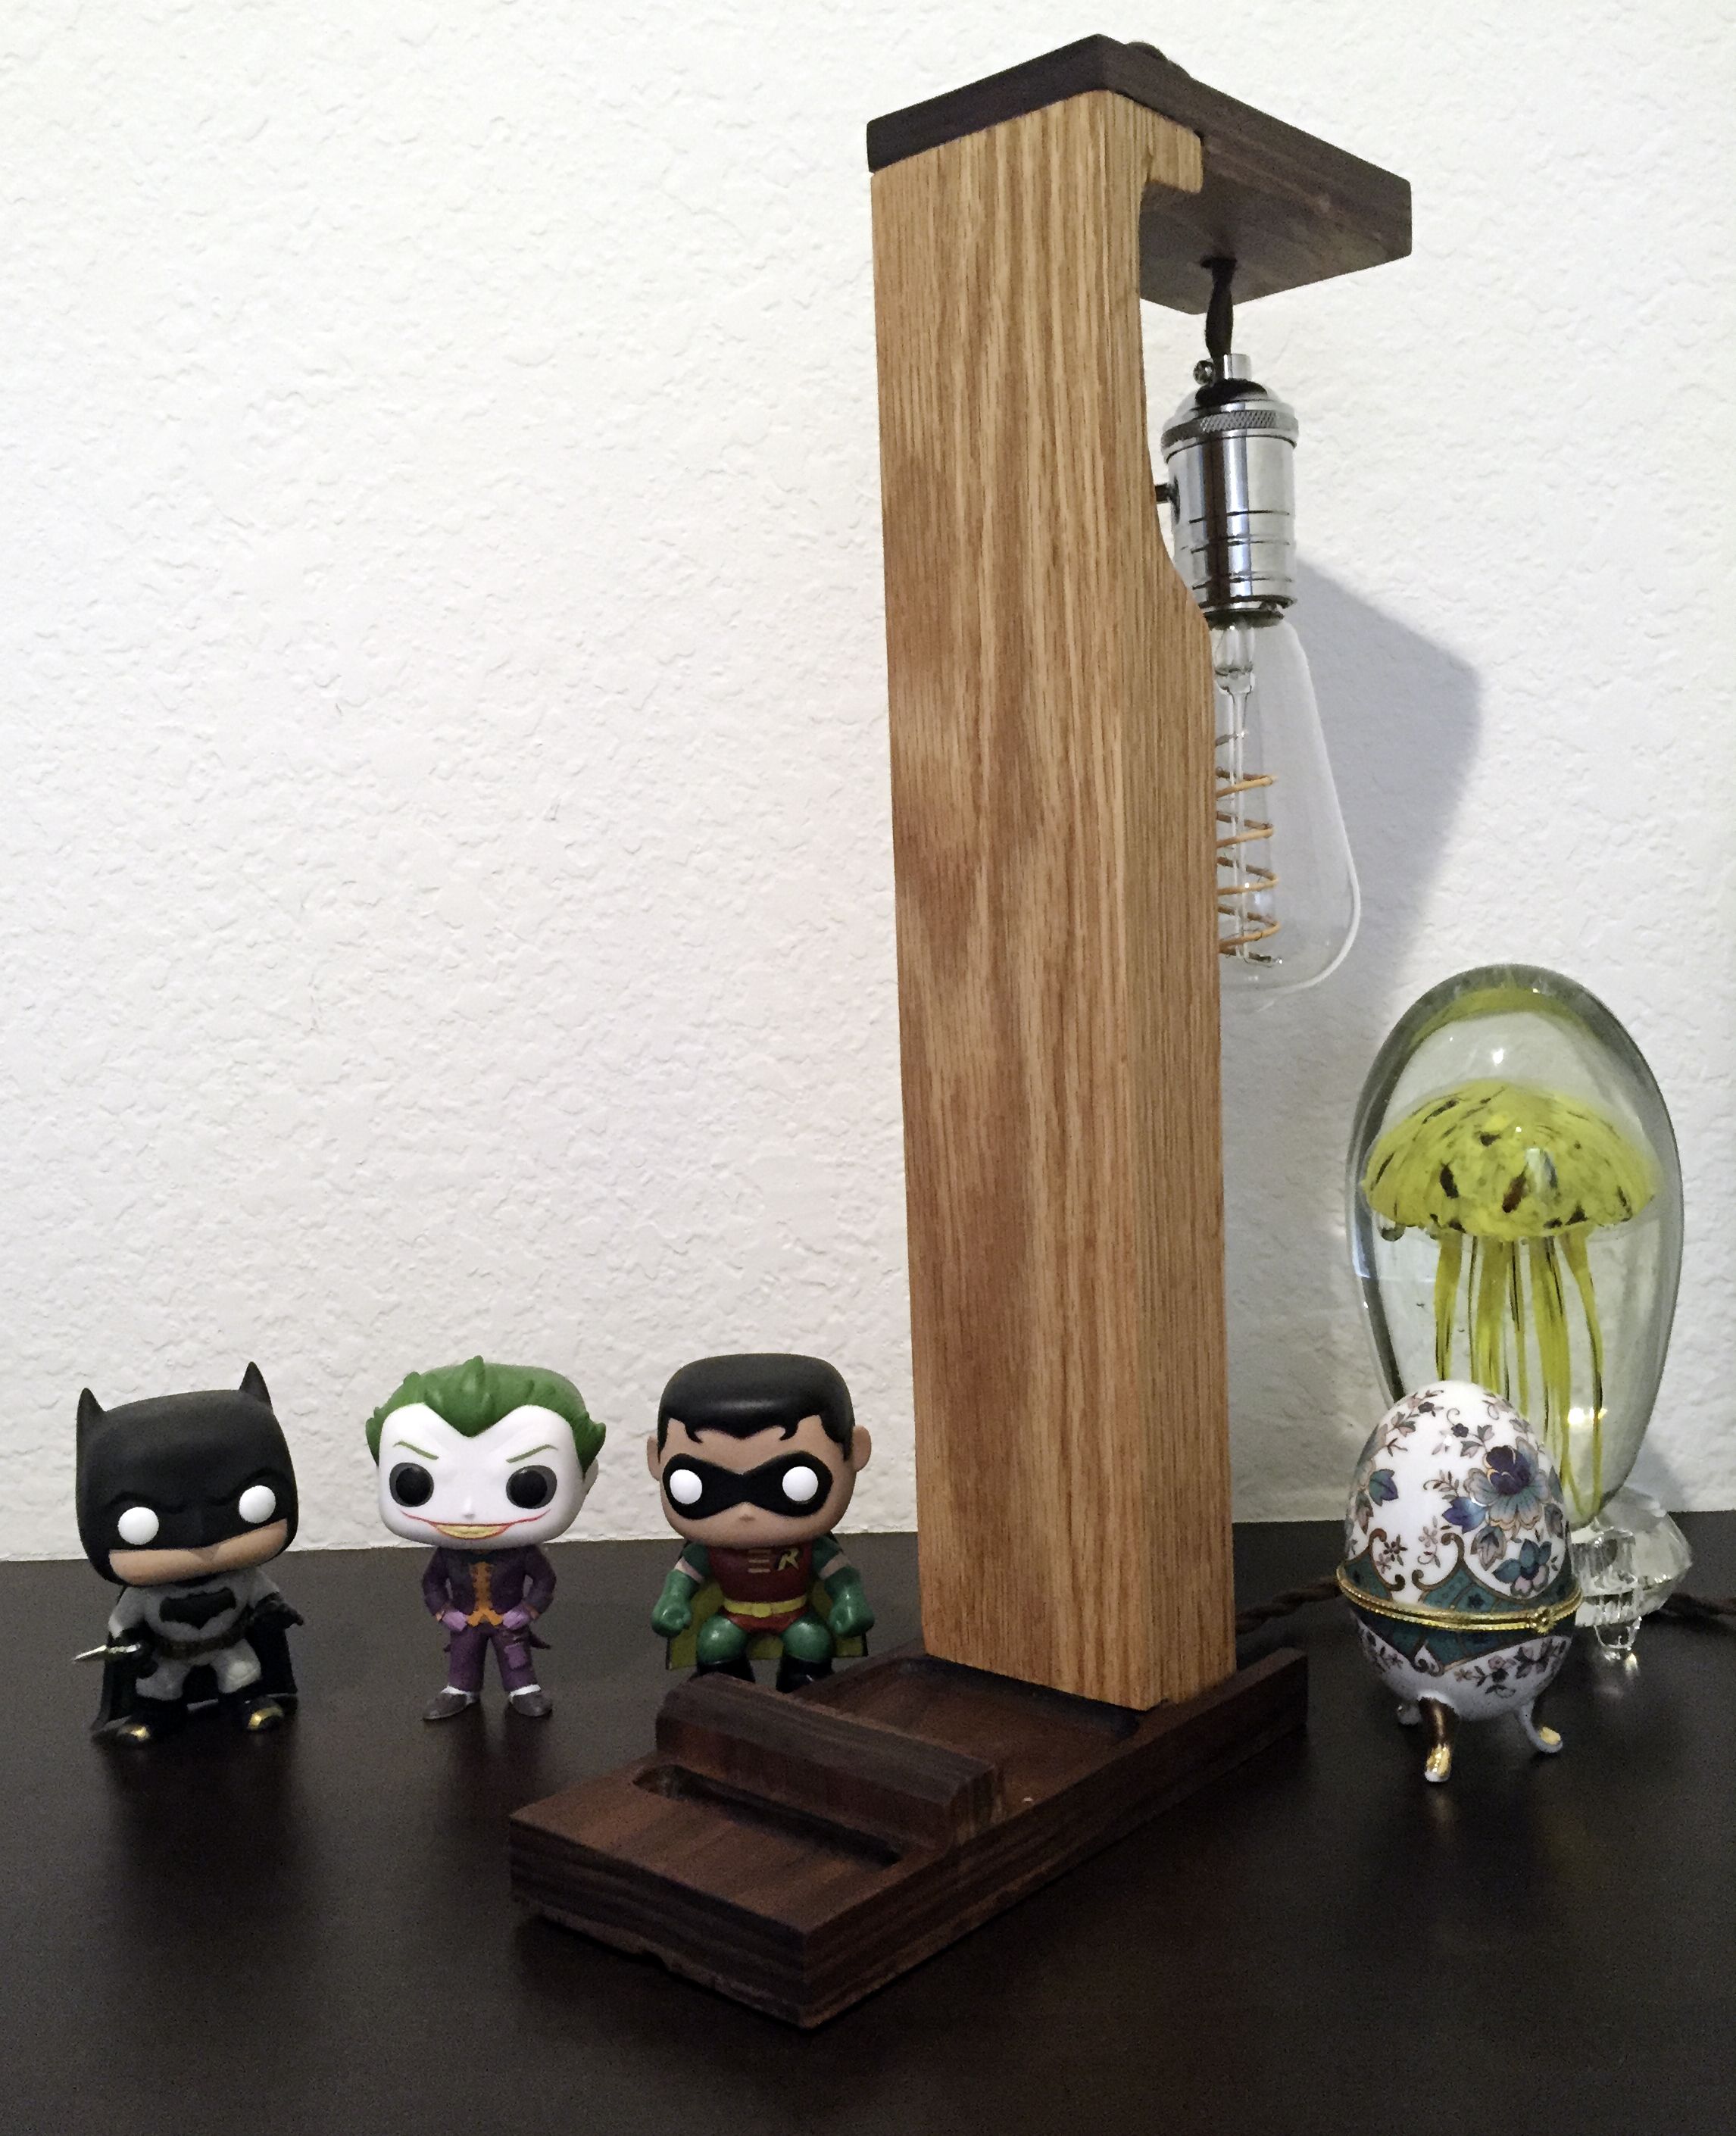 Buy a Custom Wood Table Lamp - Edison Desk Lamp - Wooden Desk Lamp - Handmade Gift - Reading ...